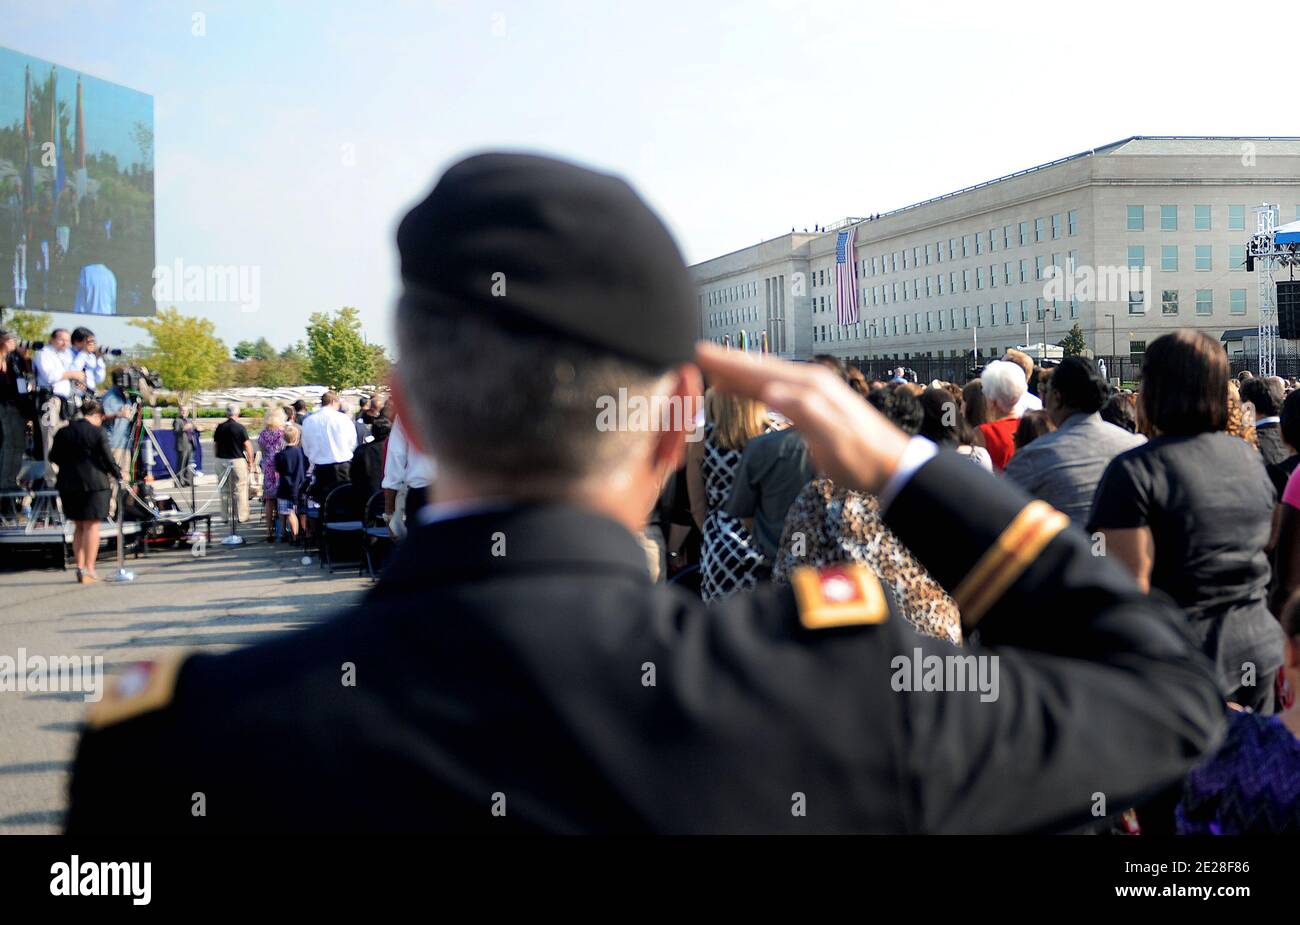 Il Pentagono commemora il decimo anniversario di 9/11 2001 attentati terroristici del Pentagono del 11 settembre 2011 ad Arlington, VA, USA. Foto di Olivier Douliery/ABACAPRESS.COM Foto Stock